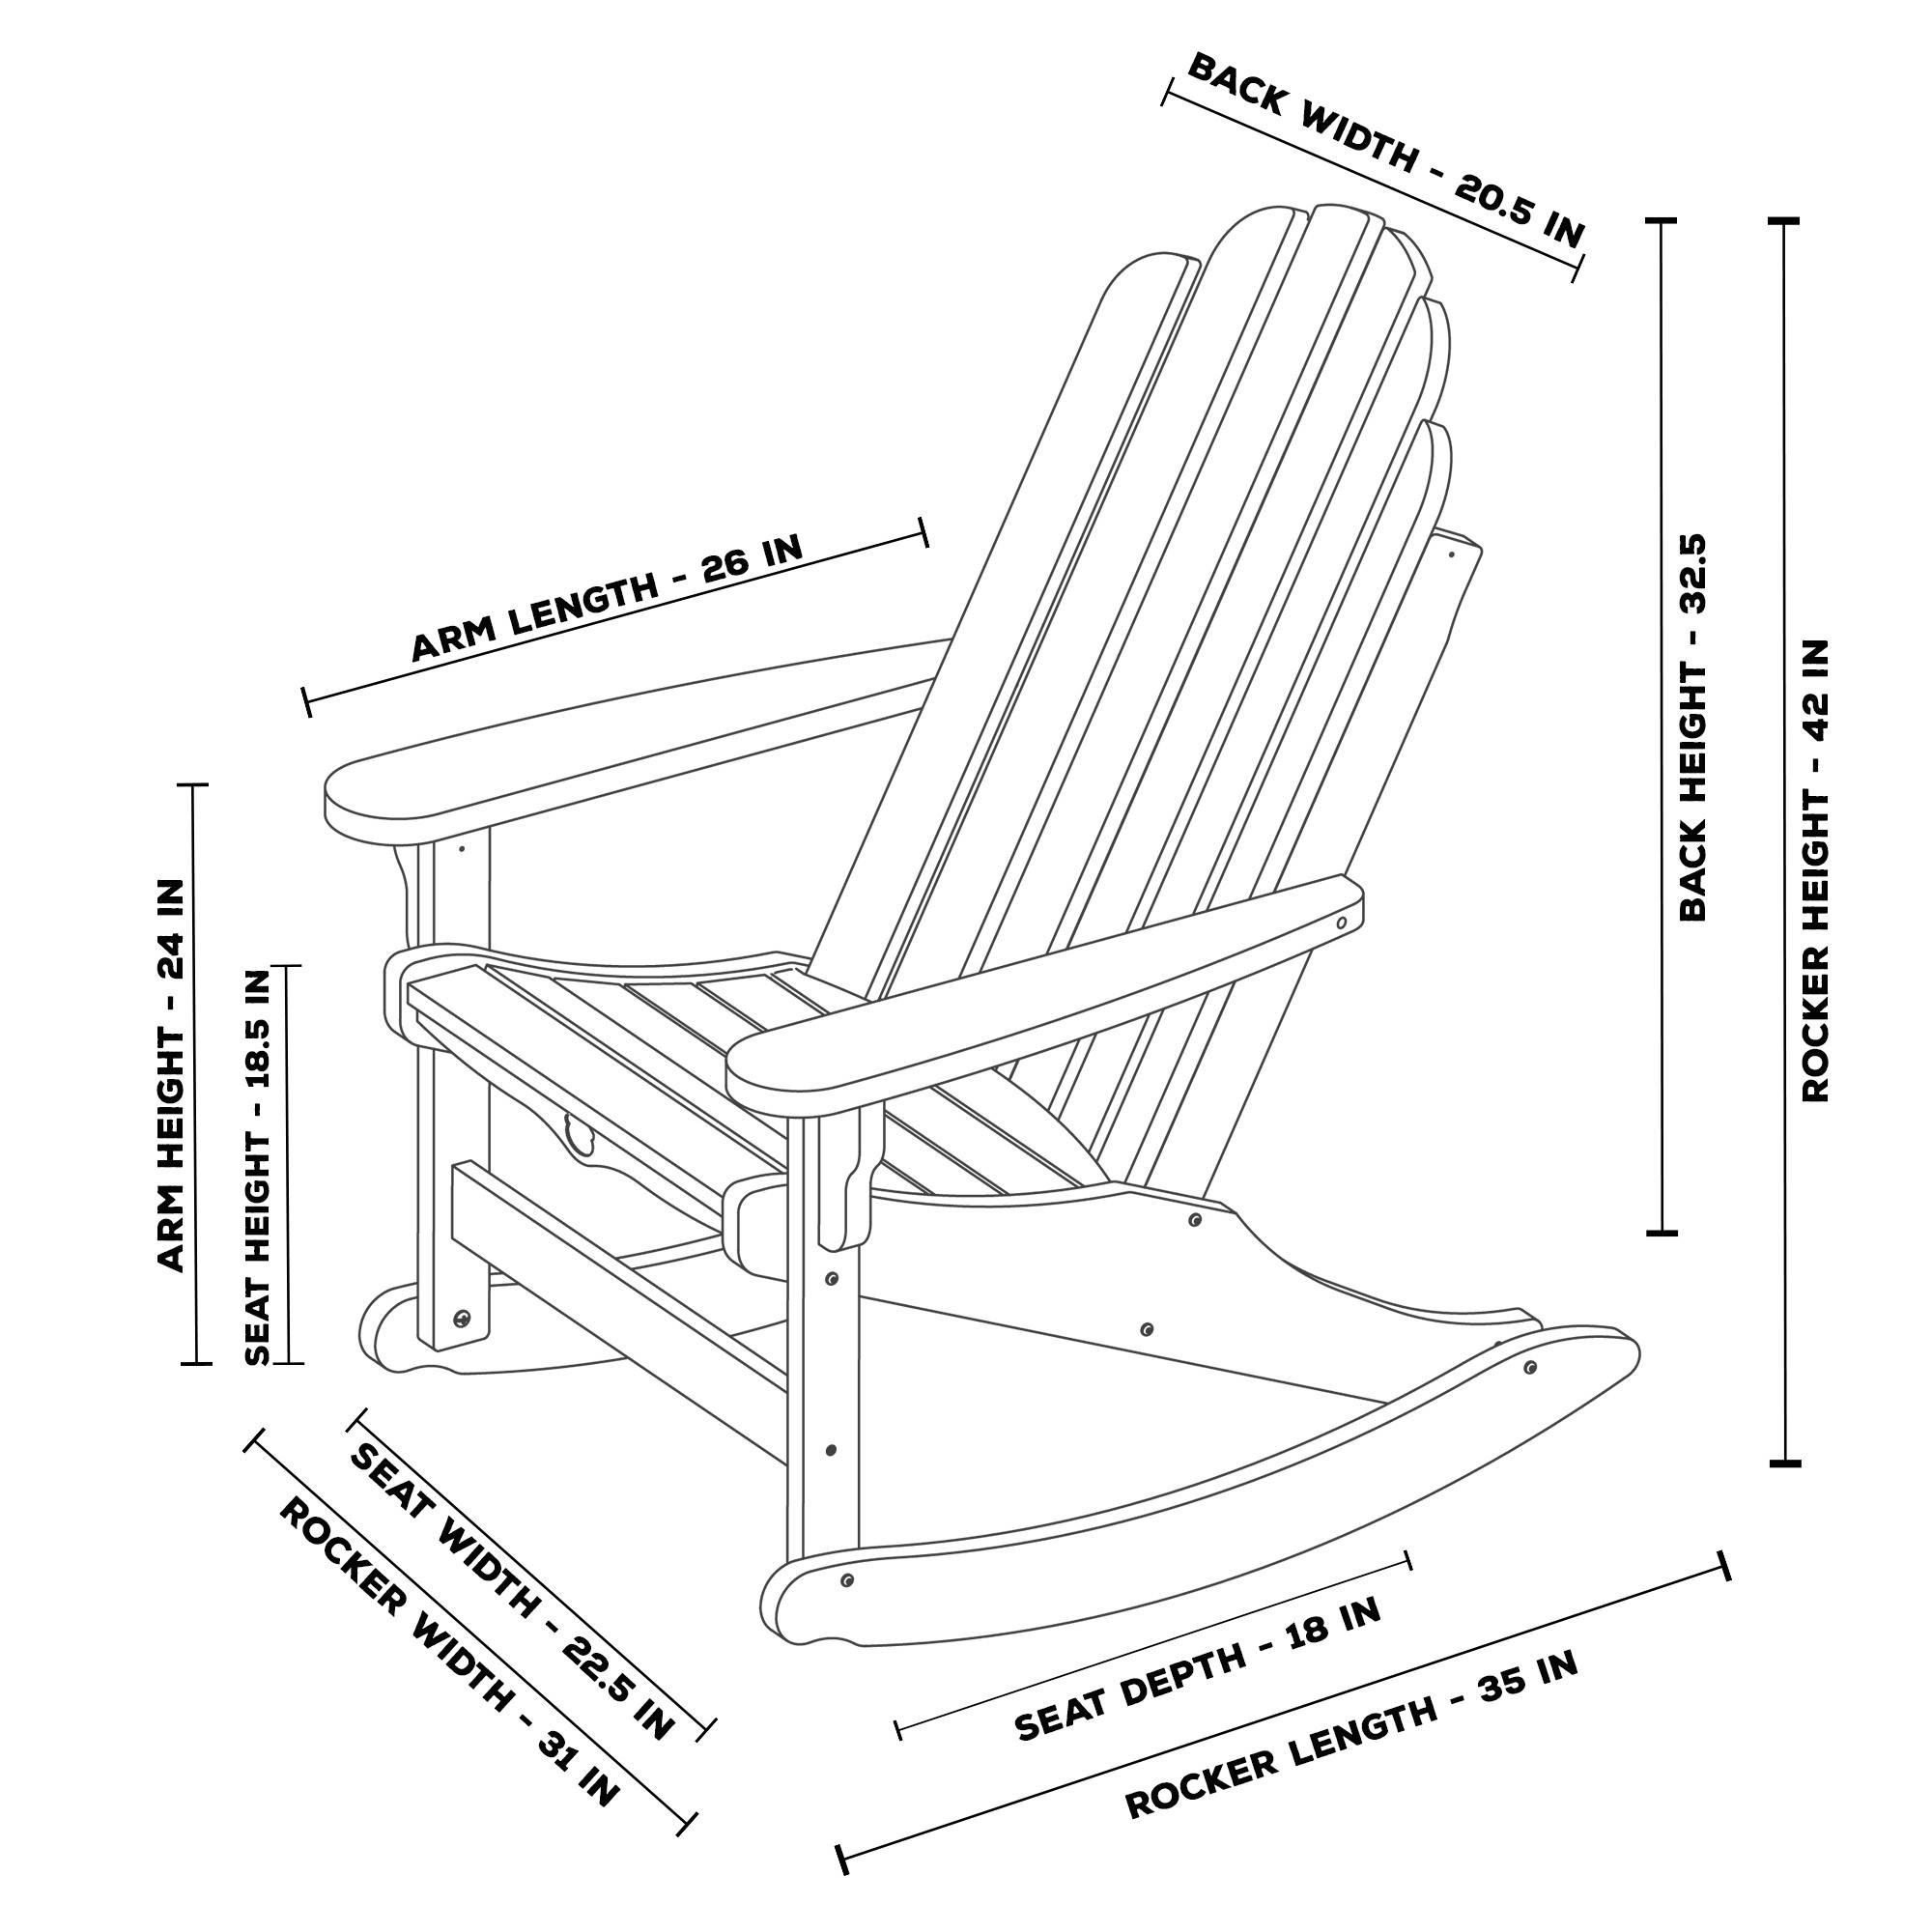 Как самостоятельно сделать кресло-качалку из дерева